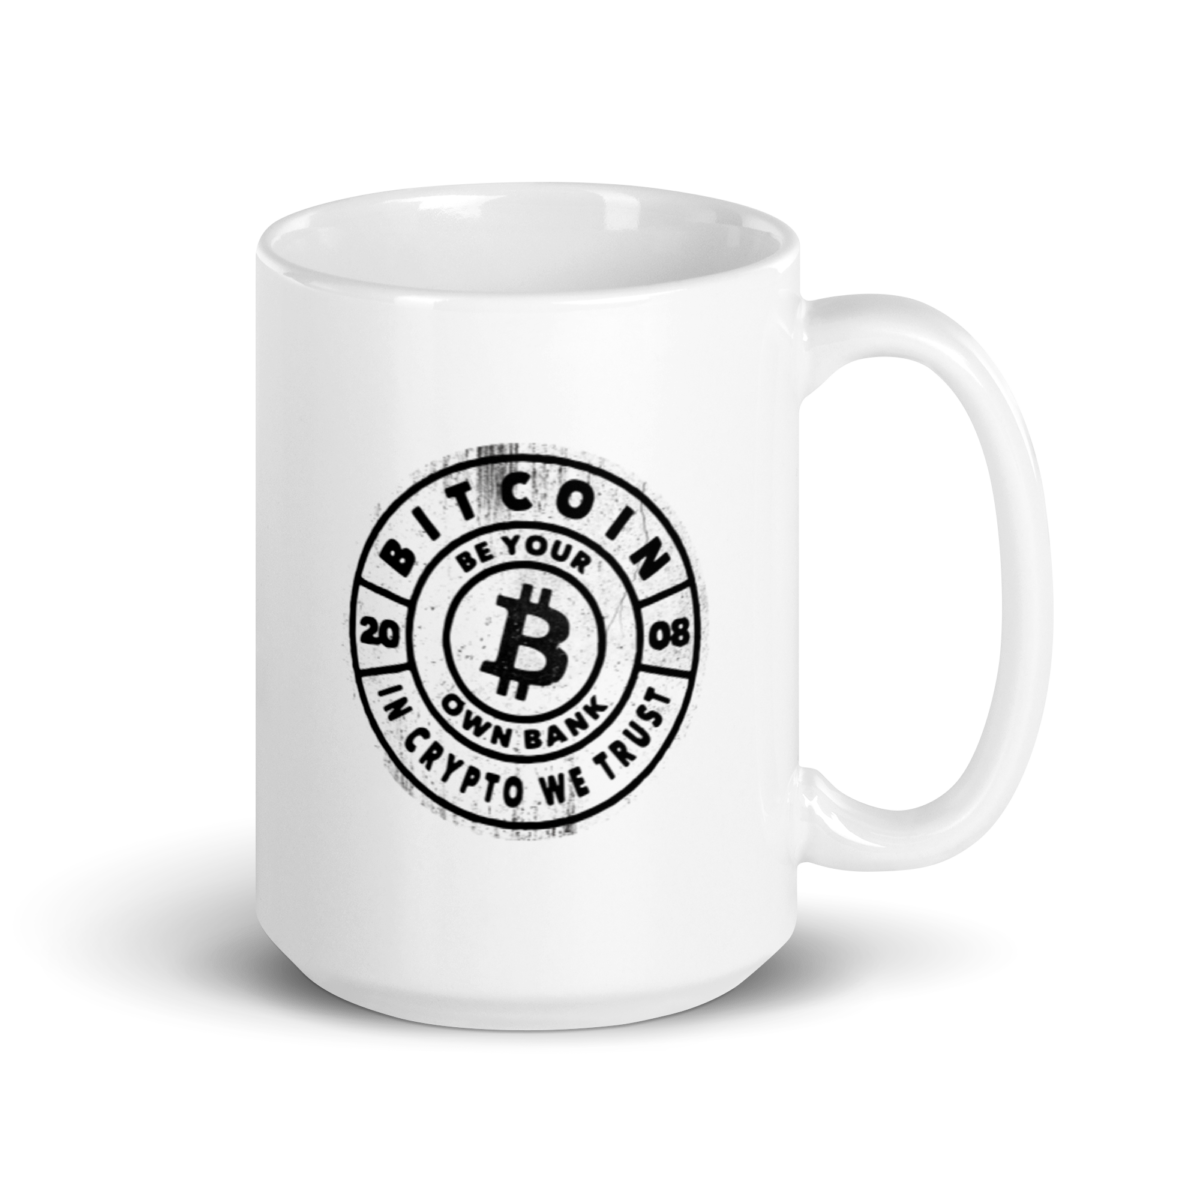 white glossy mug 15oz handle on right 635bd8f0c1632 - Bitcoin Be Your Own Bank mug